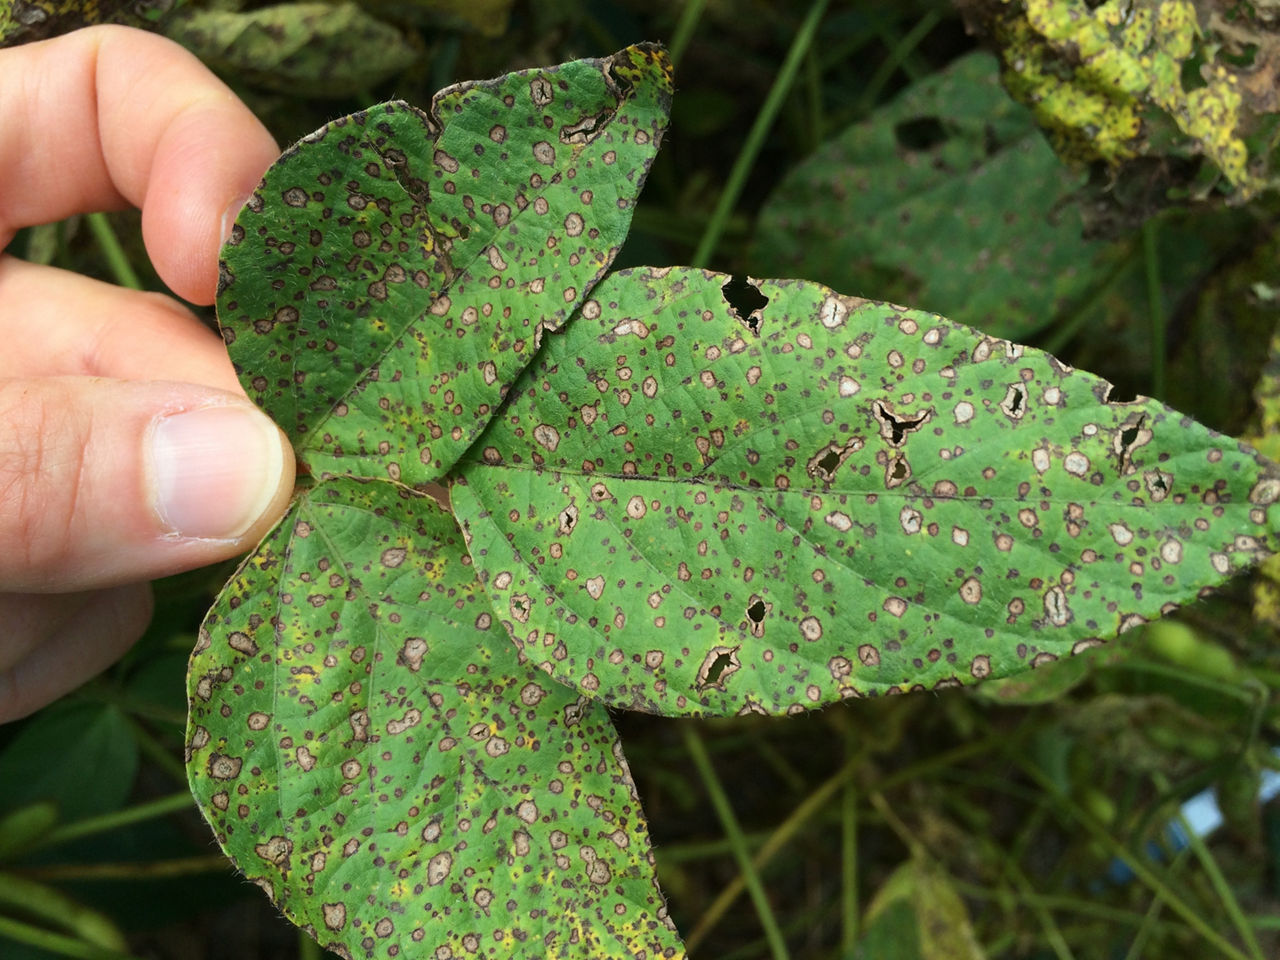 Frogeye leaf lesions on soybean leaf